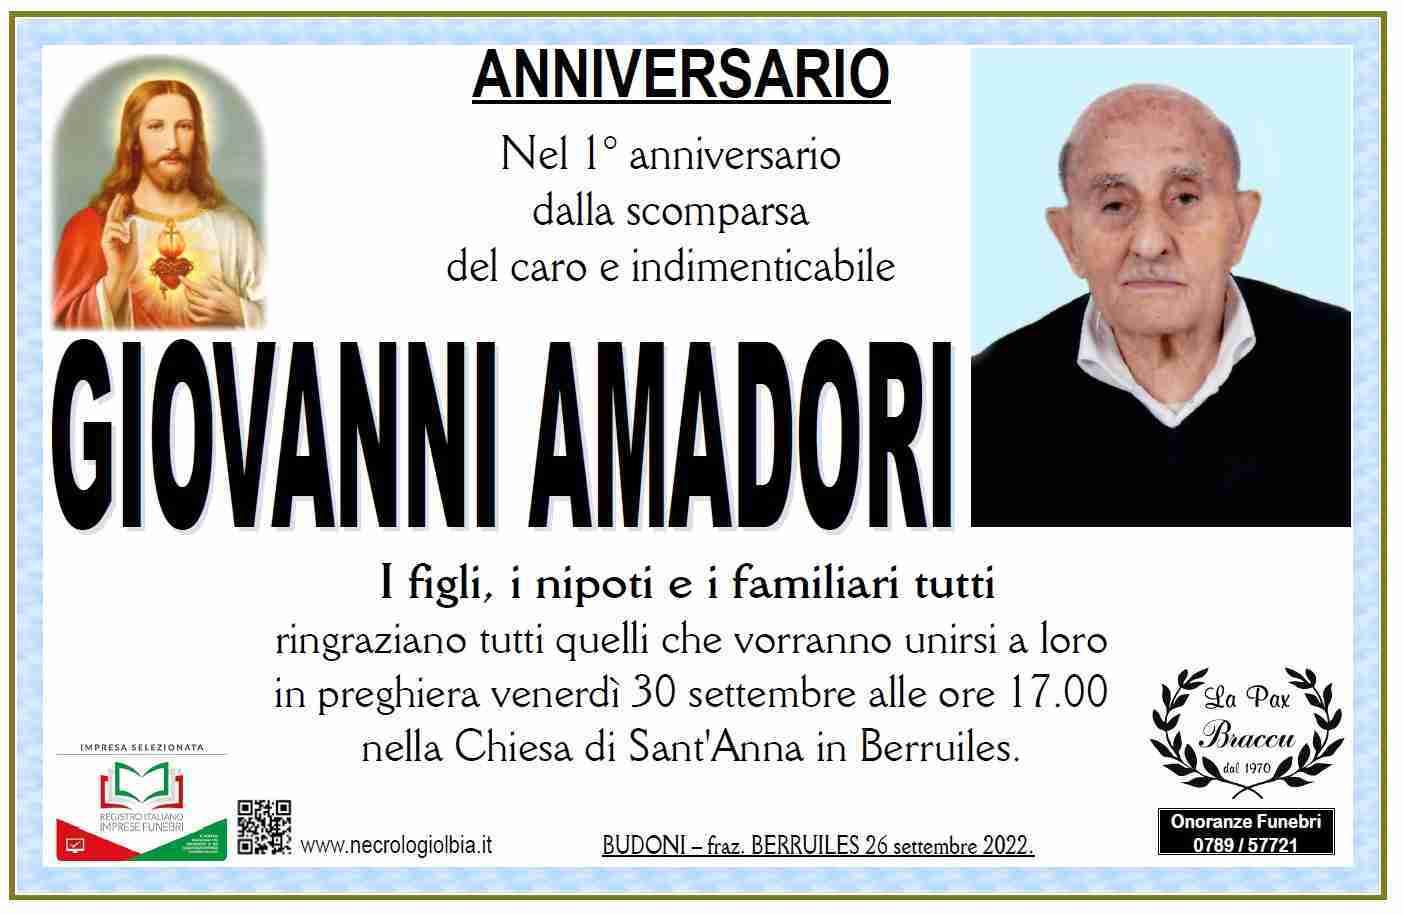 Giovanni Amadori